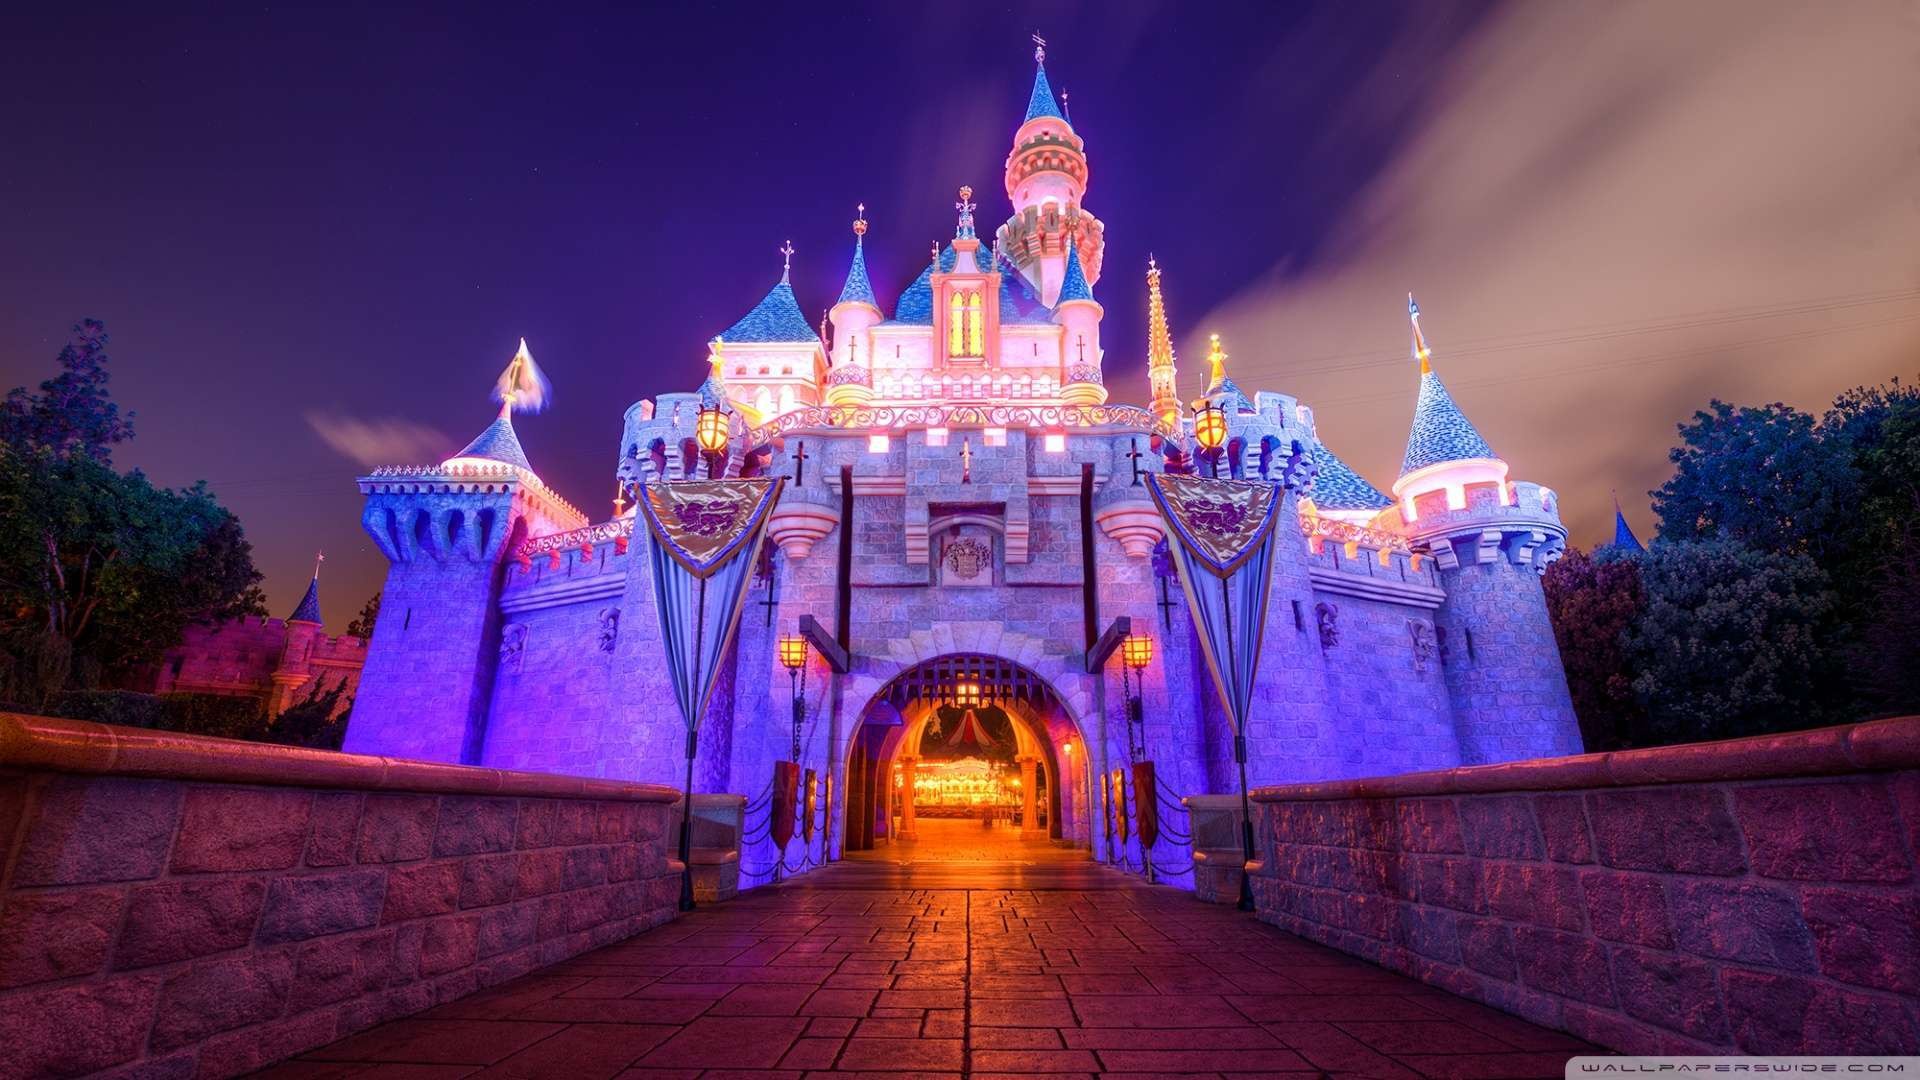 HD Disney Castle Wallpaper Nice Castles